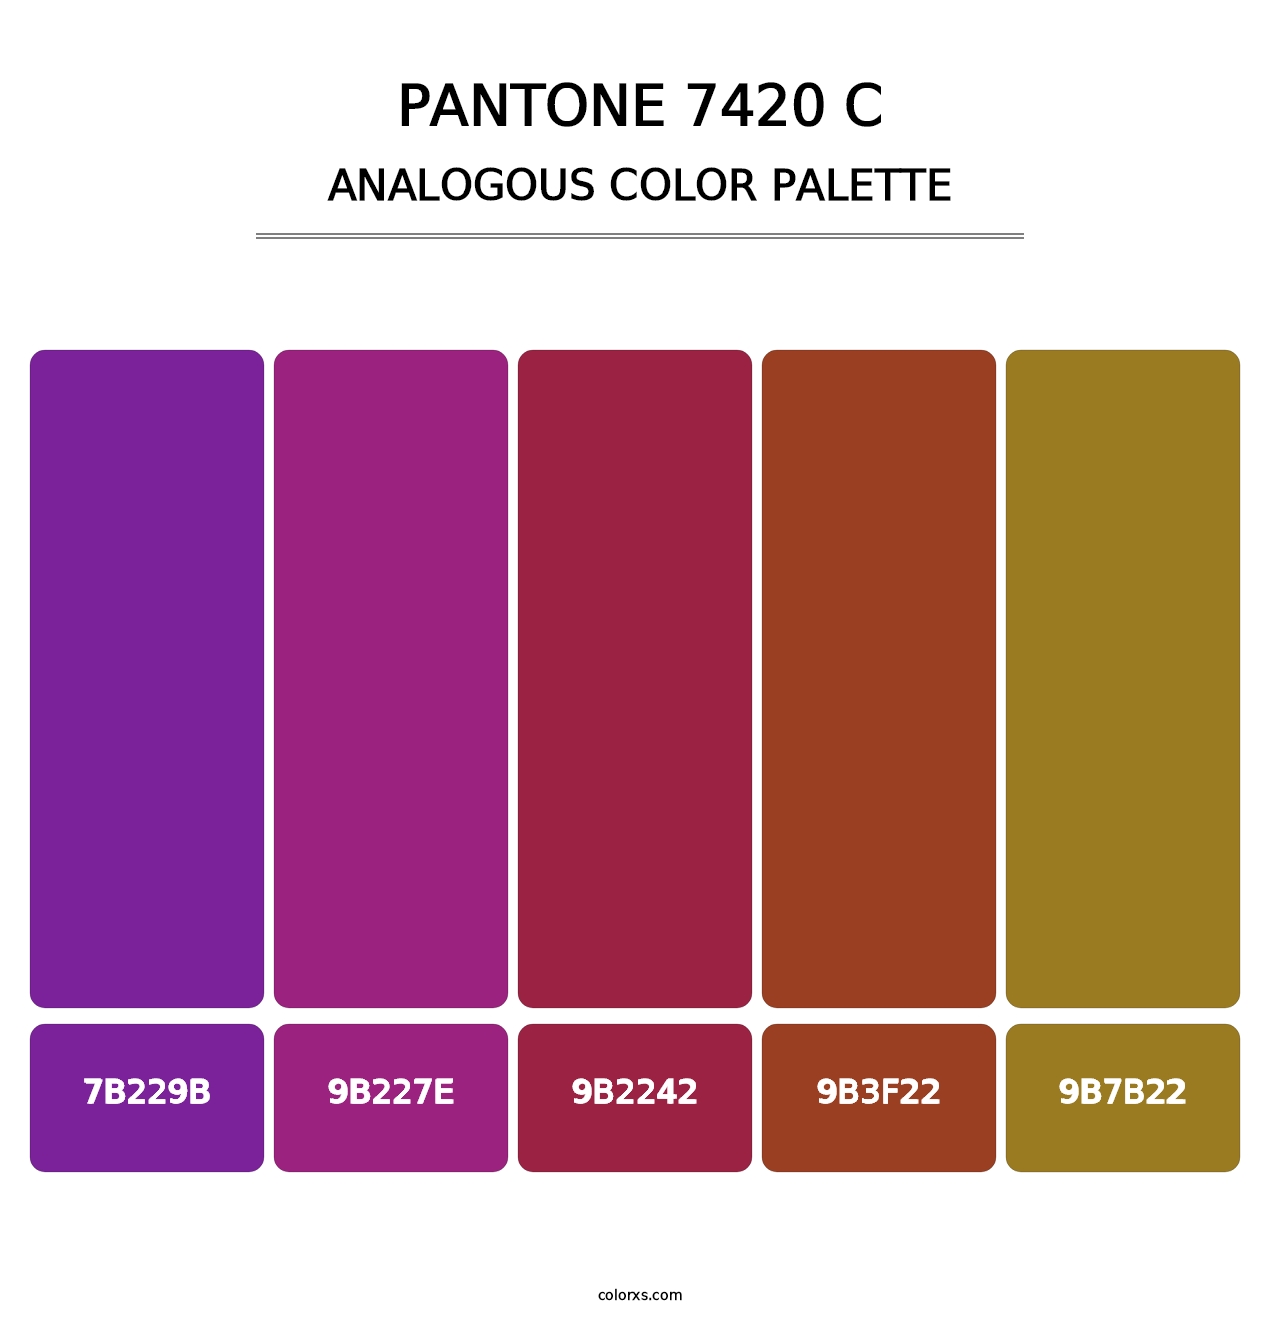 PANTONE 7420 C - Analogous Color Palette